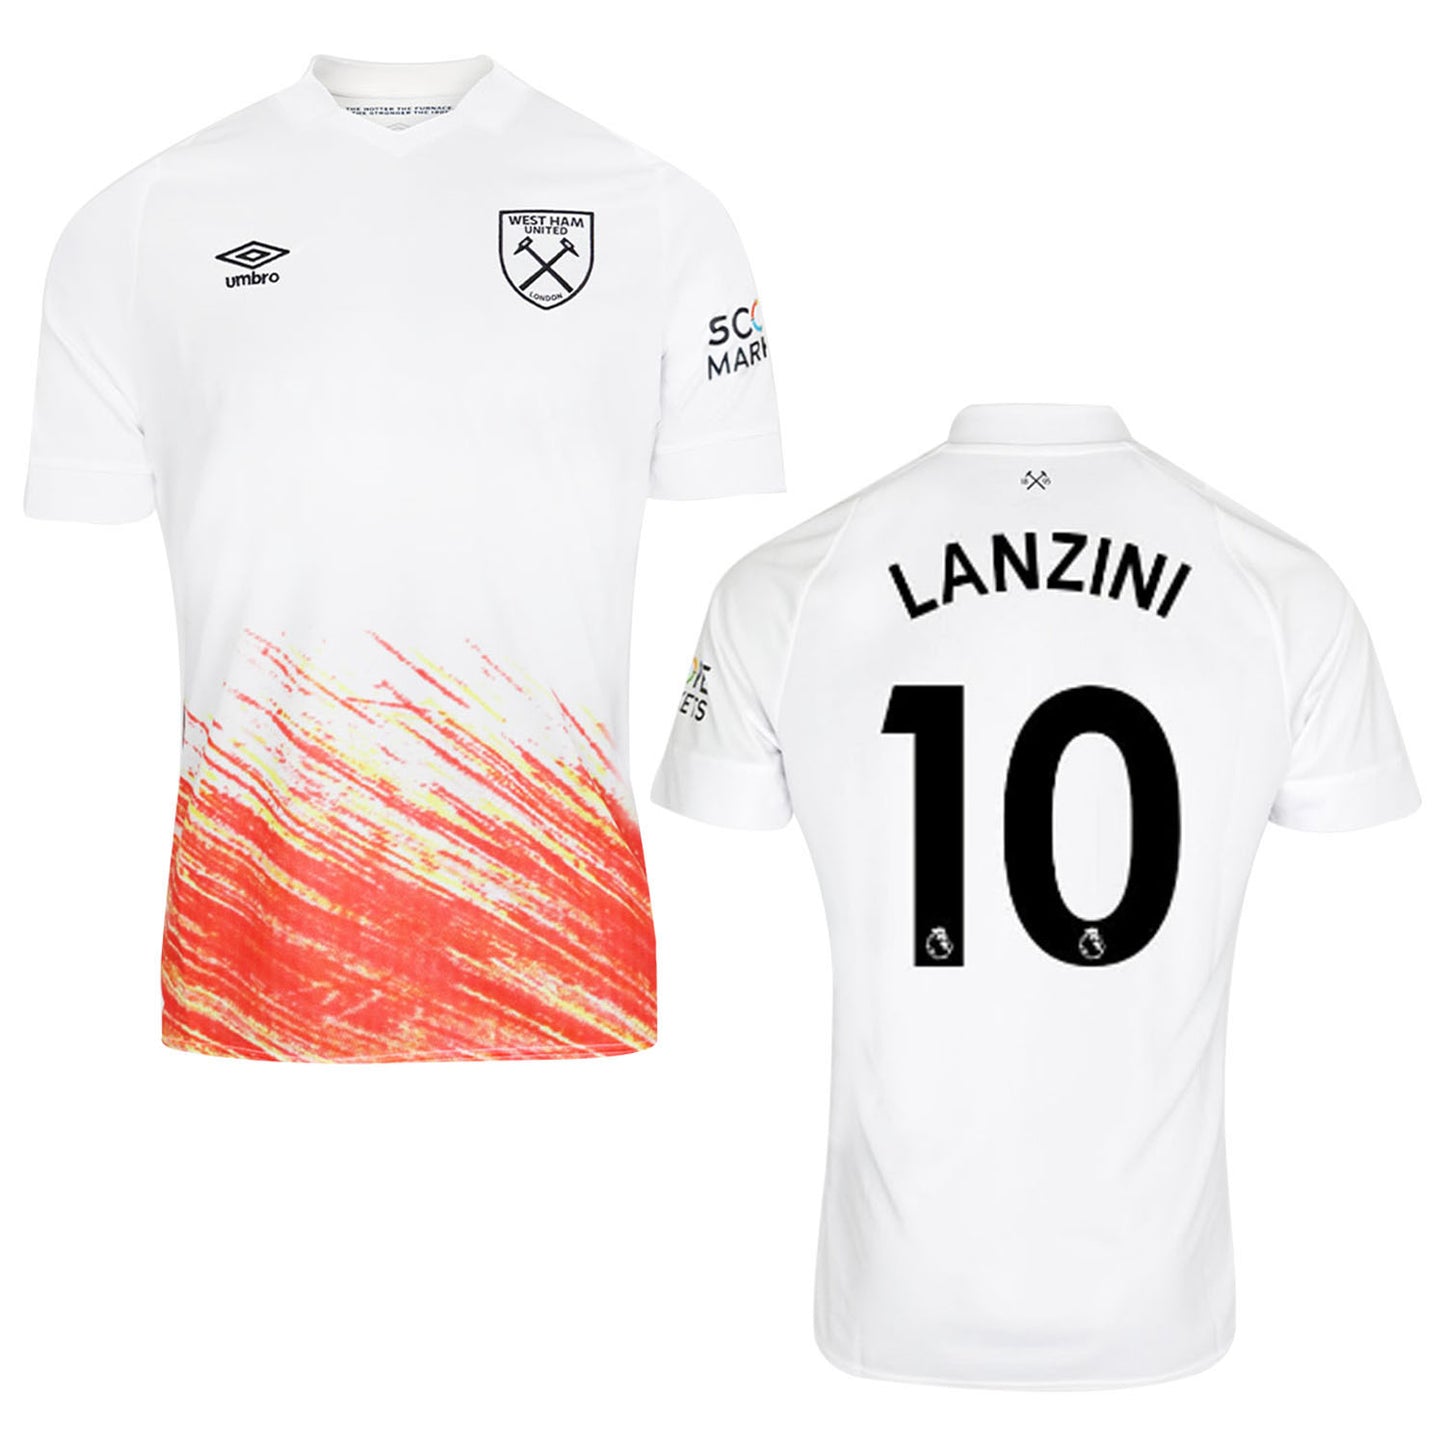 Manuel Lanzini West Ham 10 Jersey